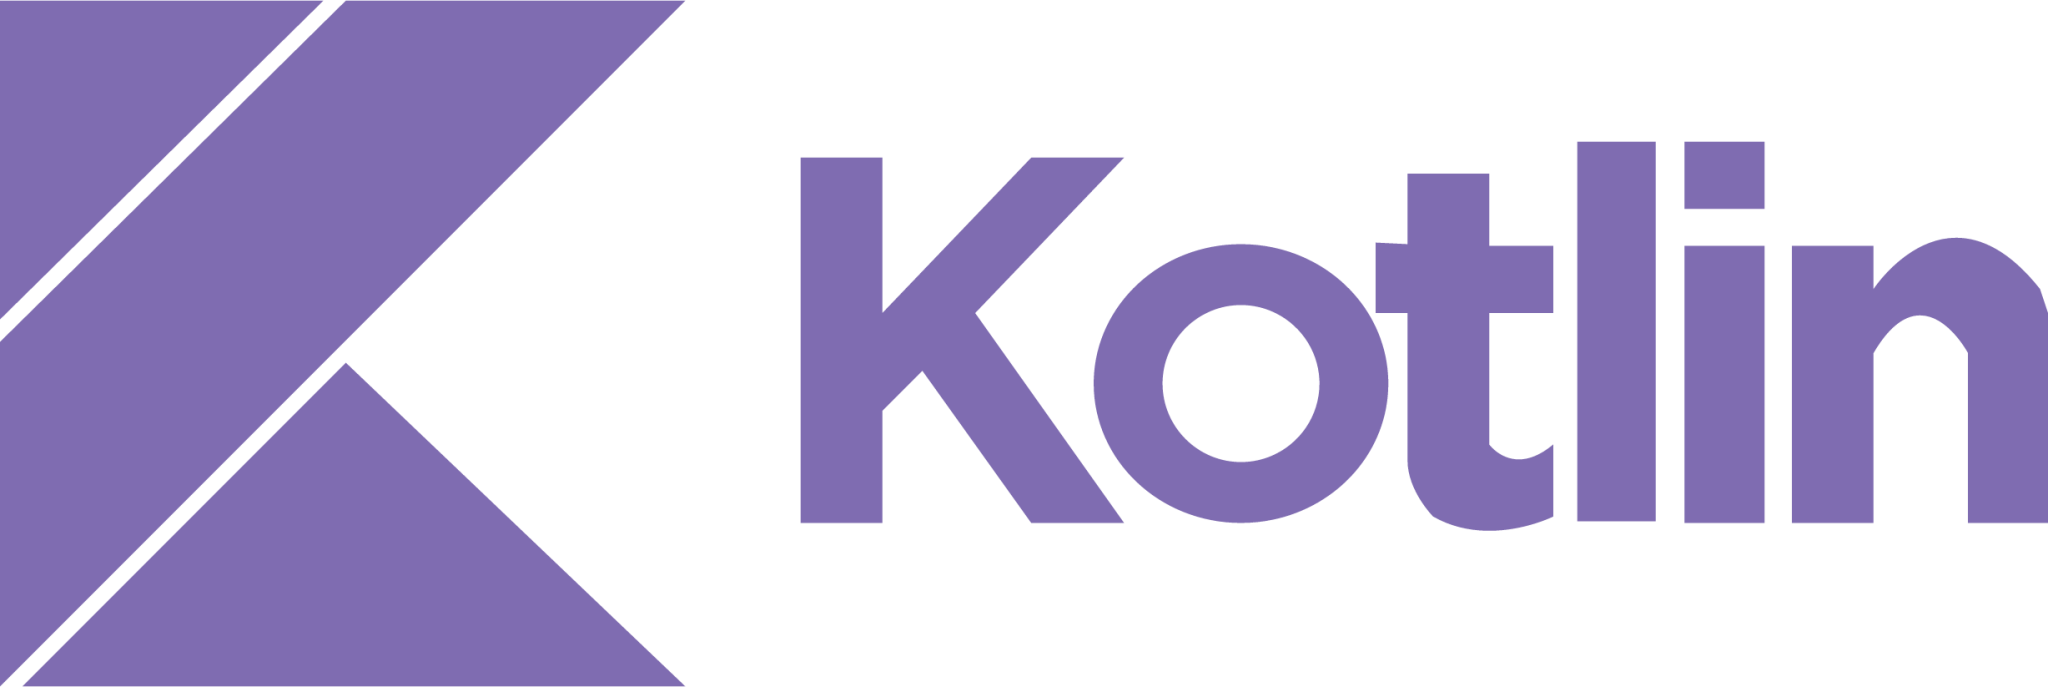 kotlin plain wordmark icon